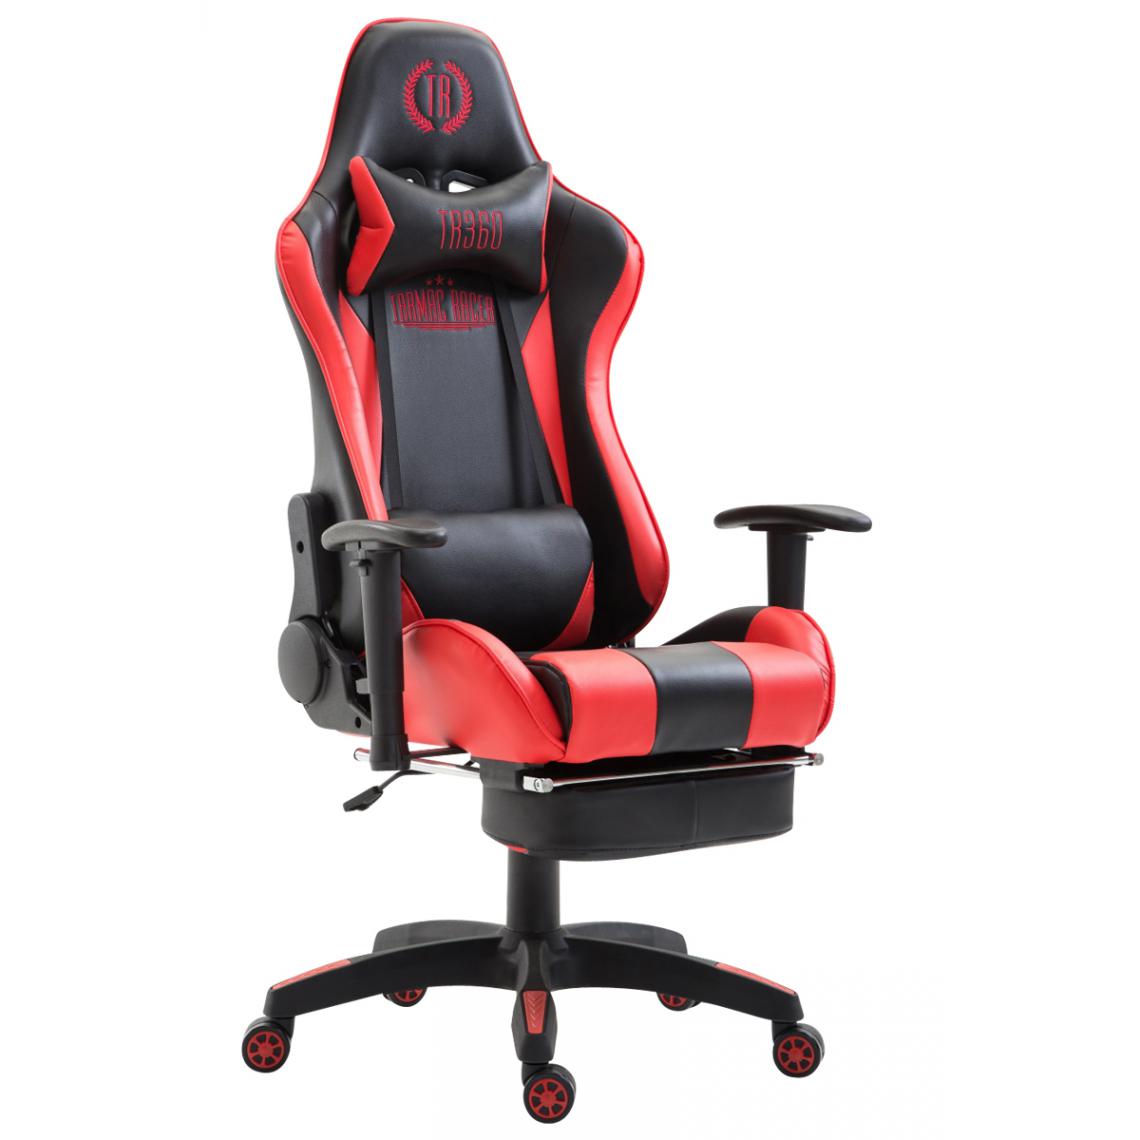 Icaverne - Superbe Chaise de bureau gamme Palikir simili cuir avec repose-pieds couleur noir rouge - Chaises